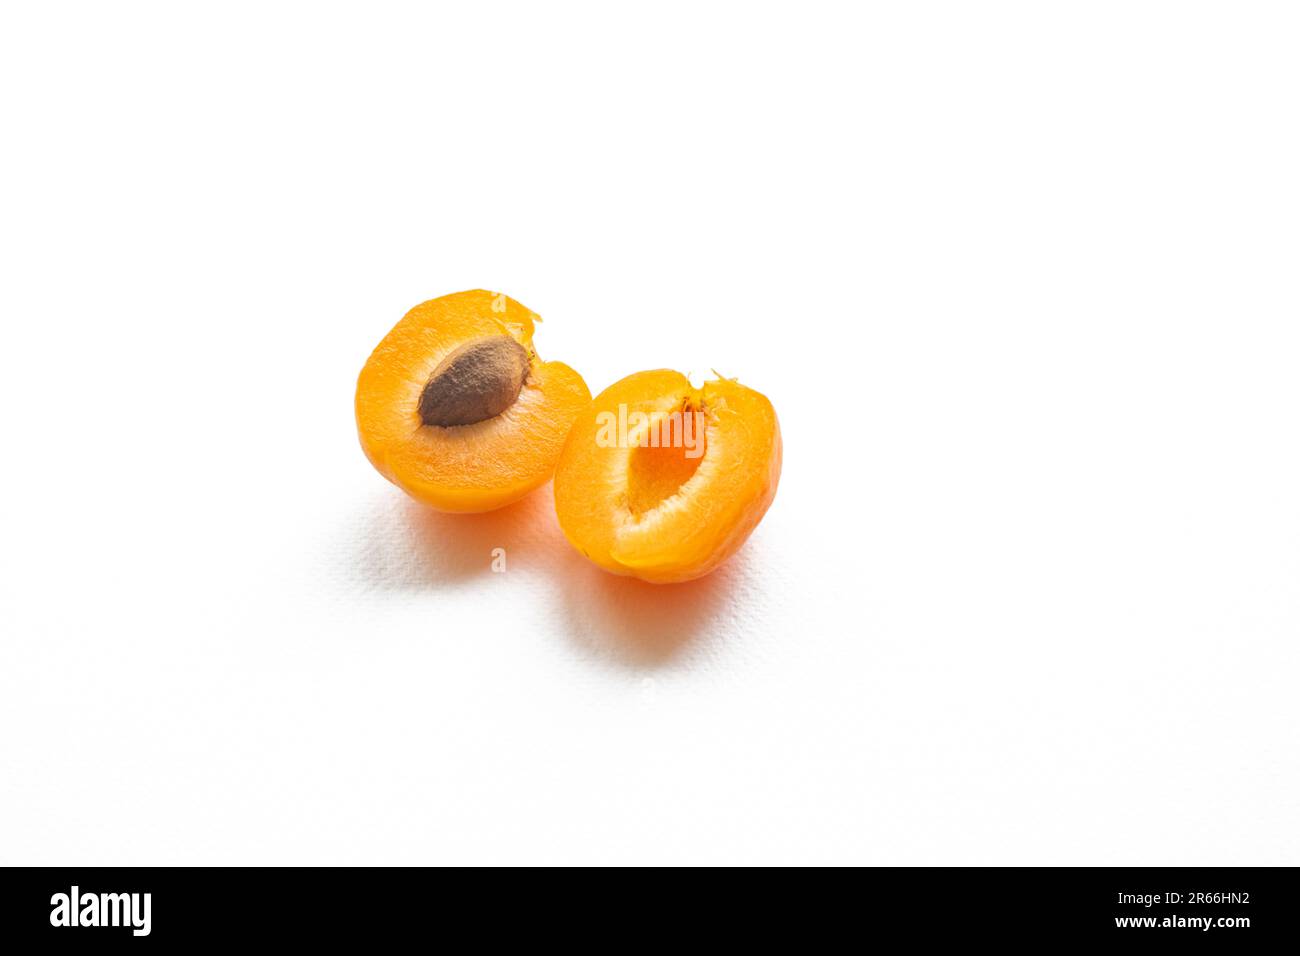 Deliziosamente vivace albicocche giallo-arancio, mezza albicocca con pipa, isolate su un fondo bianco puro Foto Stock